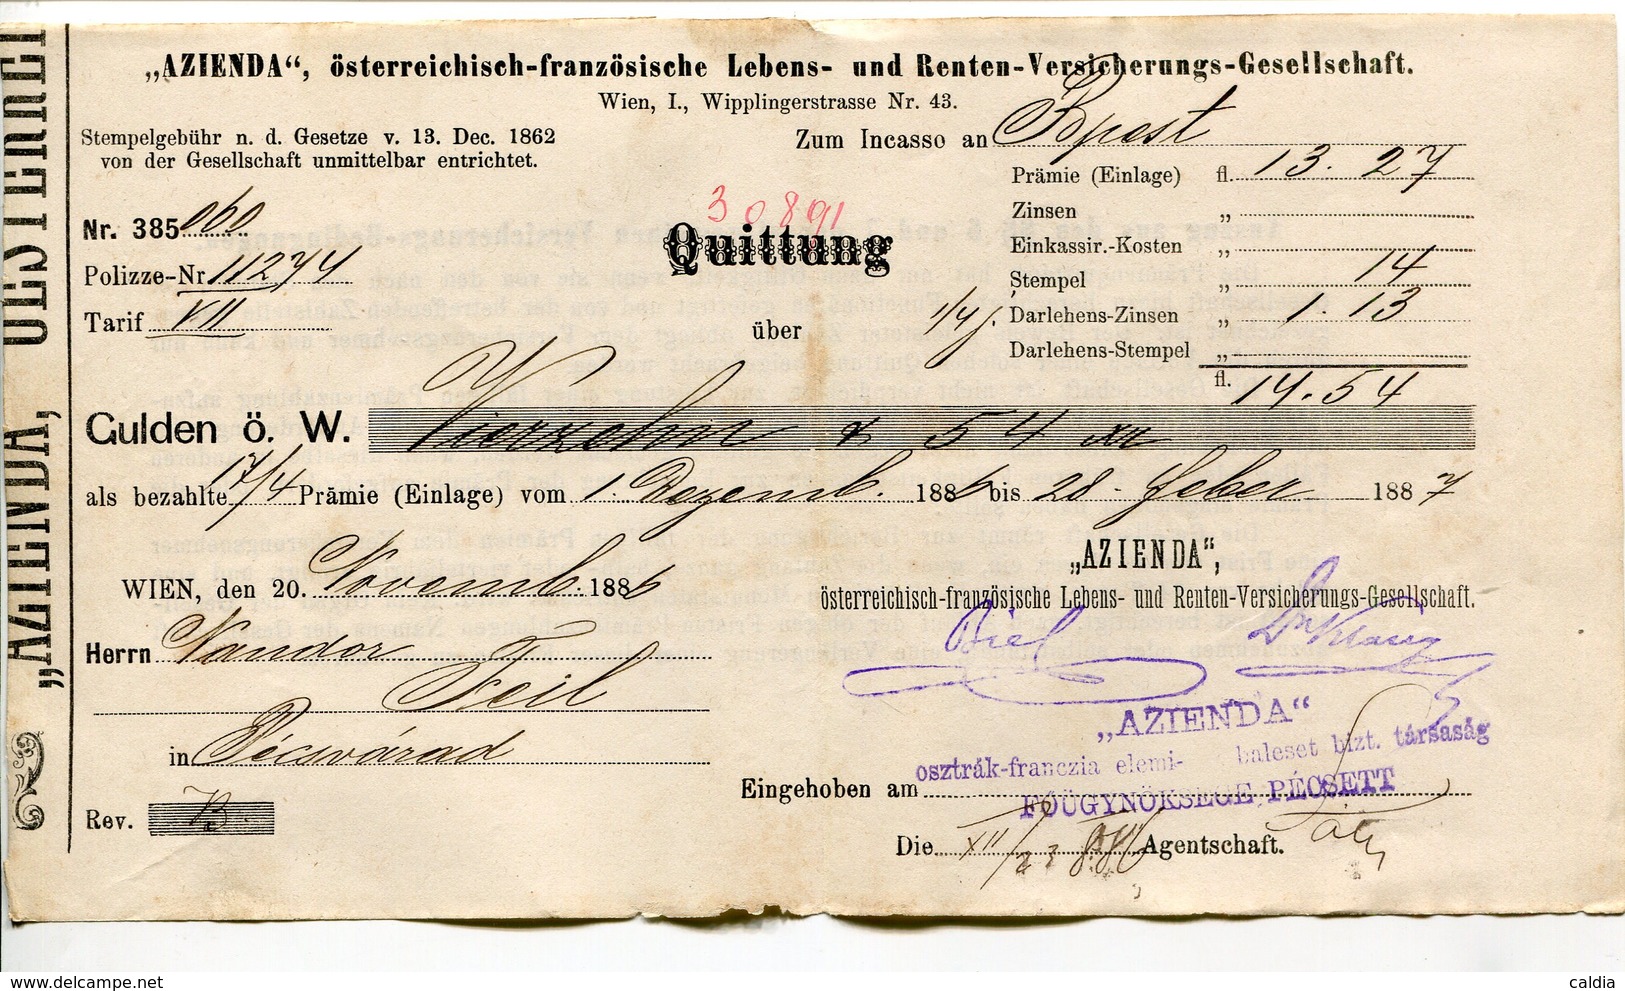 Autriche Austria Österreich Ticket QUITTUNG " AZIENDA " Austria - France Society 1887 # 2 - Oostenrijk